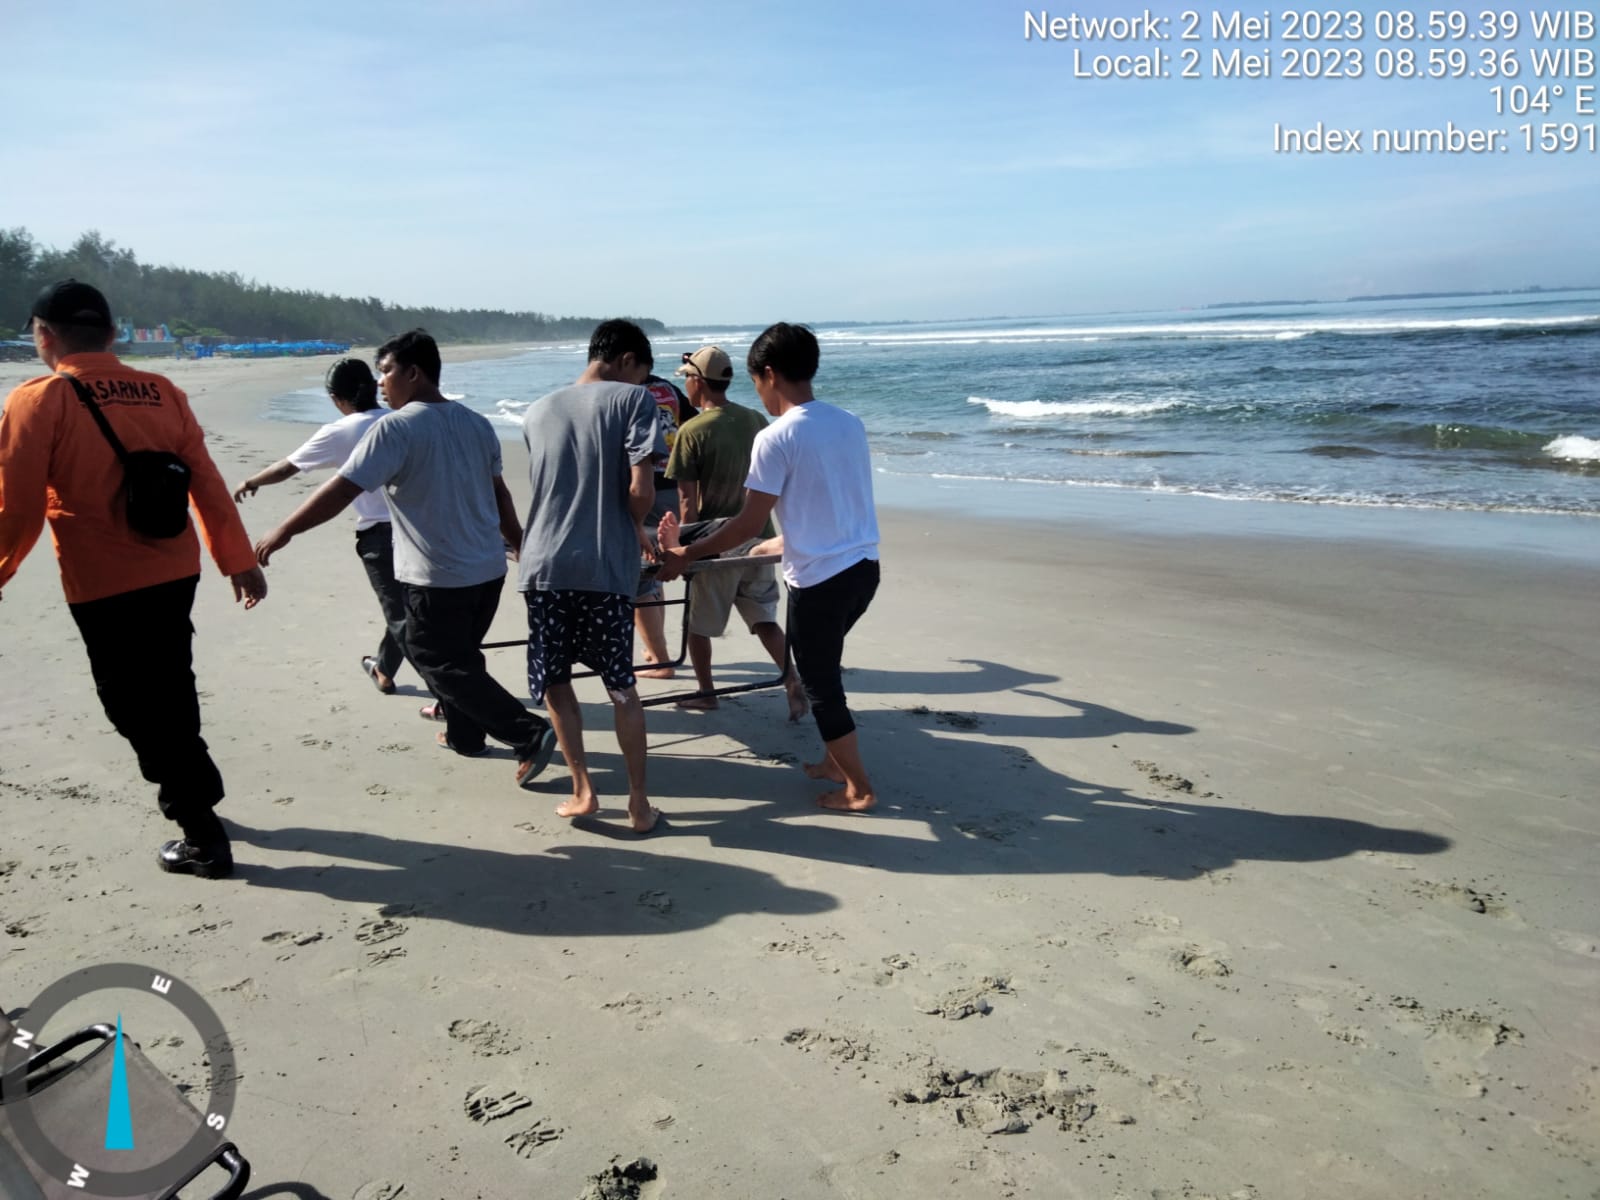 6 Warga Palembang Tenggelam di Pantai Panjang, 3 Orang Meninggal Dunia, 2 Masih Dicari